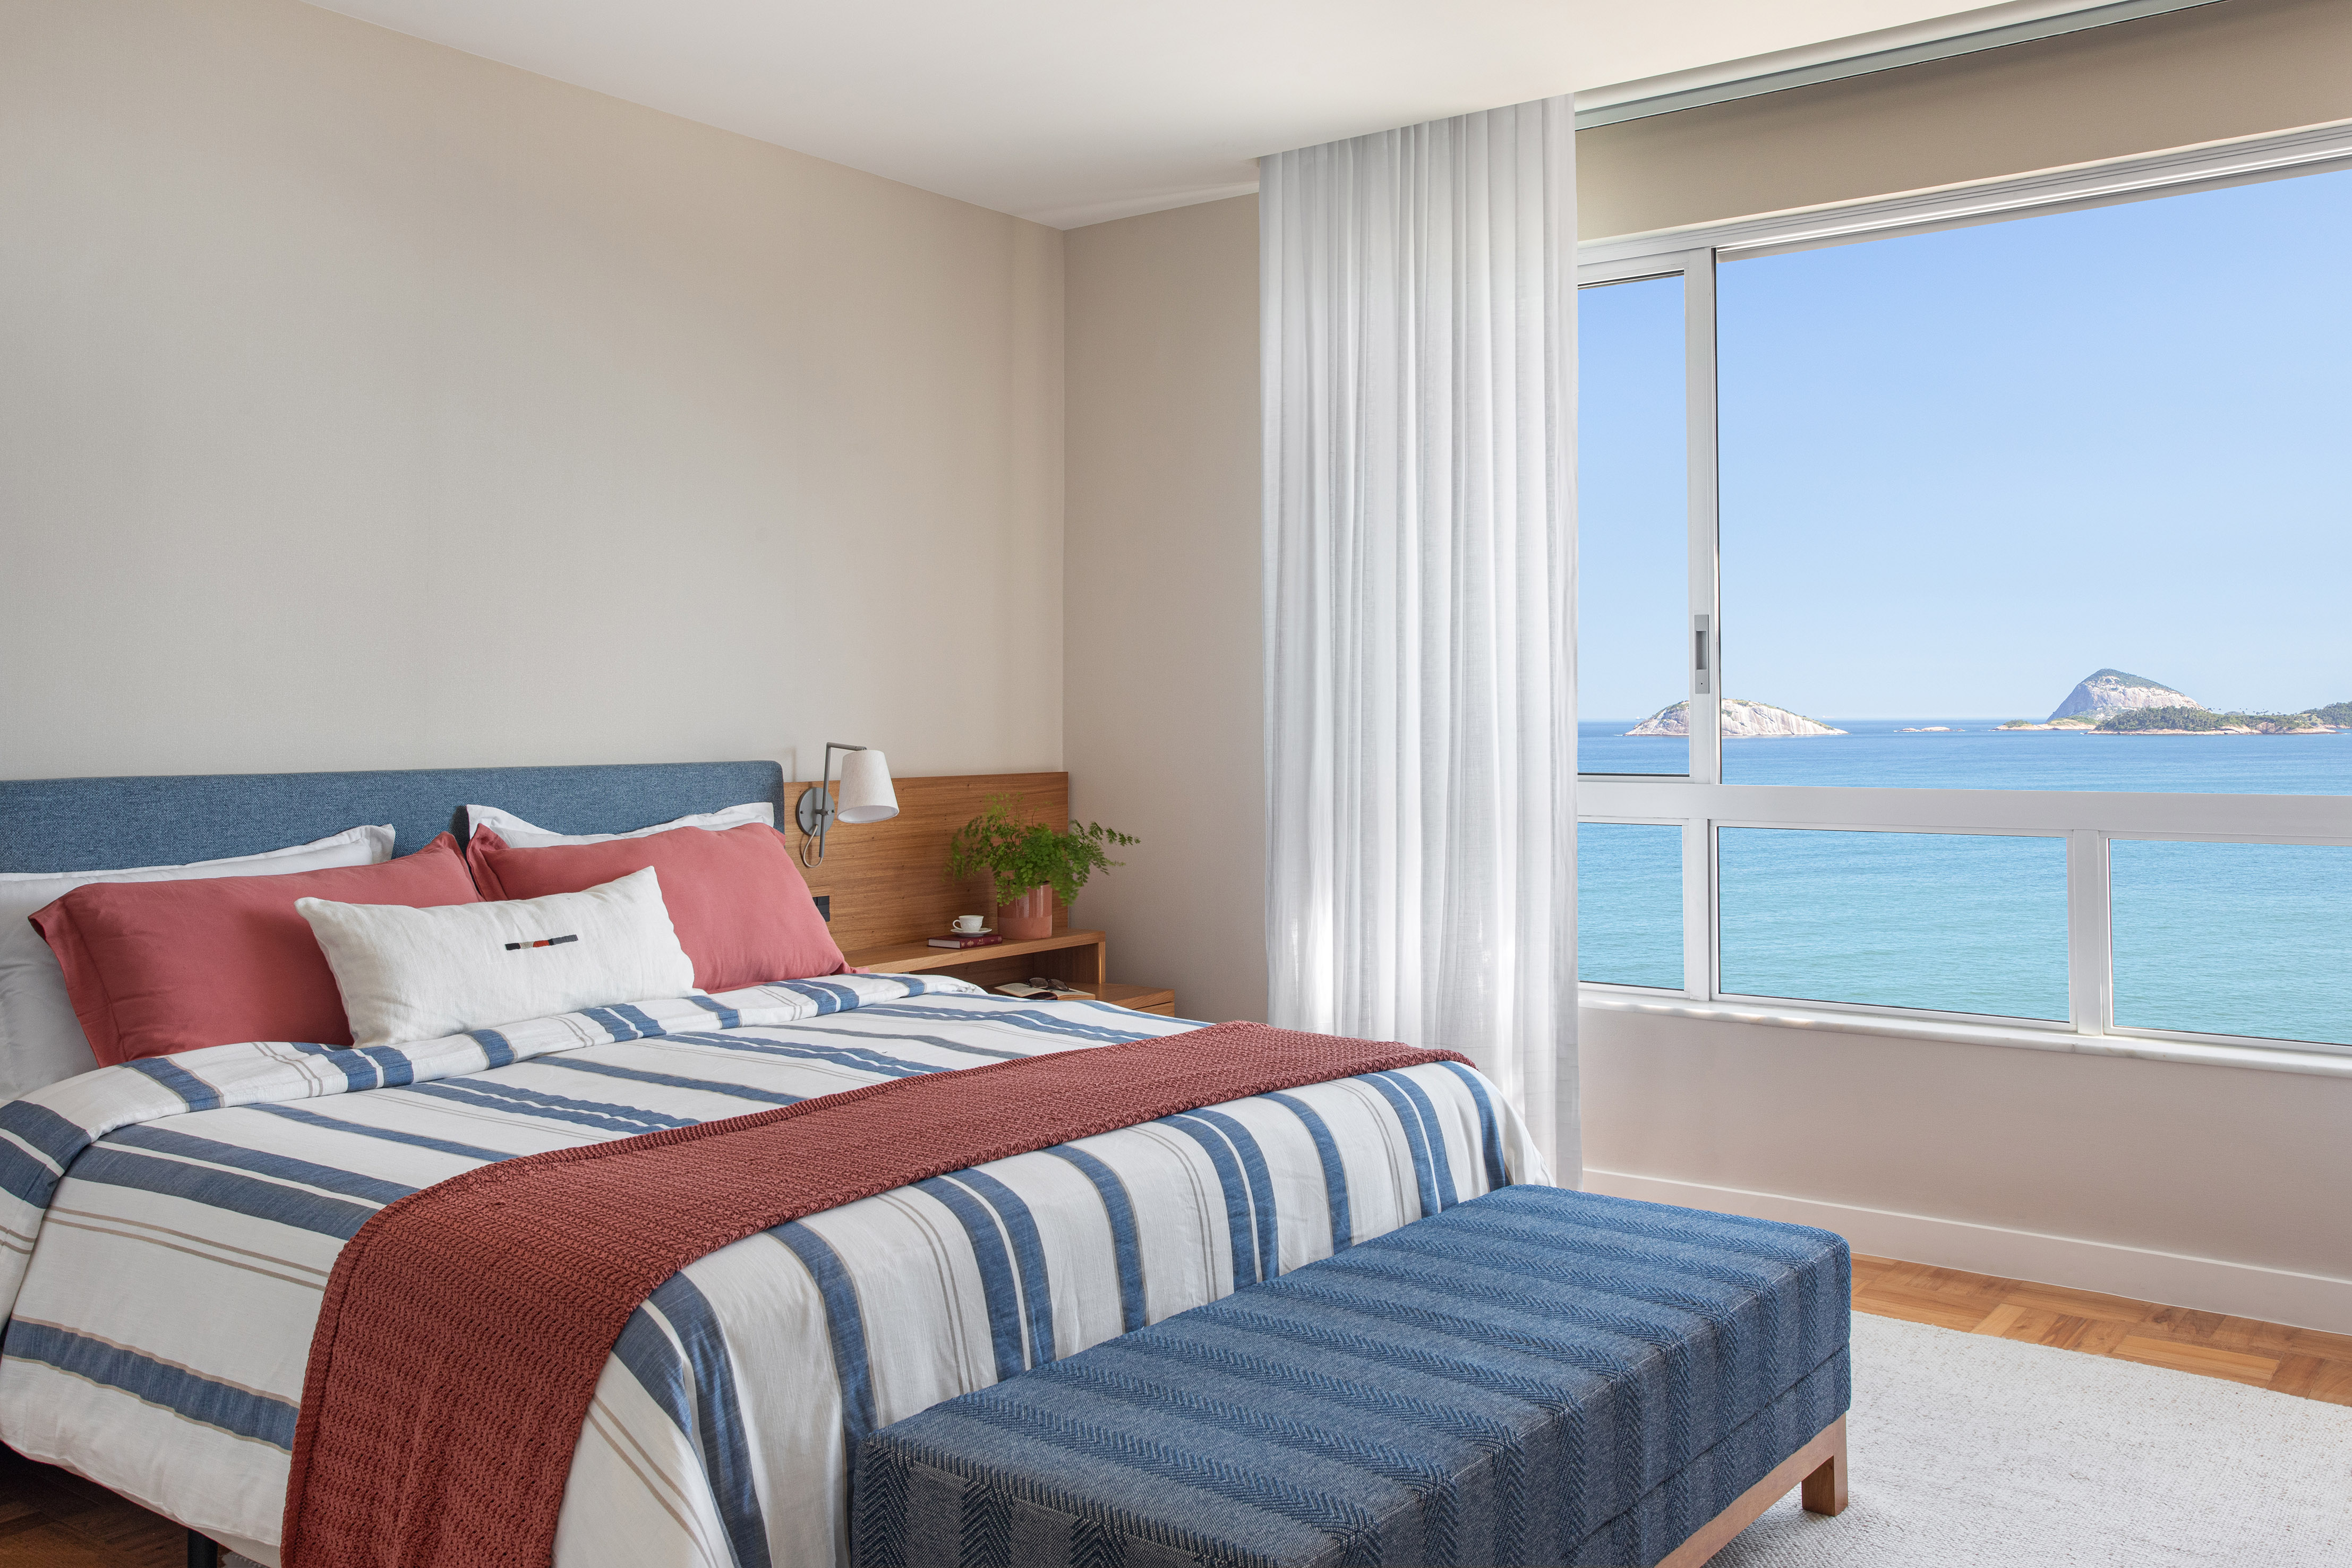 Marcenaria multifuncional caracteriza apartamento com vista para o Cristo. Projeto de Escala Arquitetura. Na foto, quarto de casal com cabeceira azul e vista para o mar.